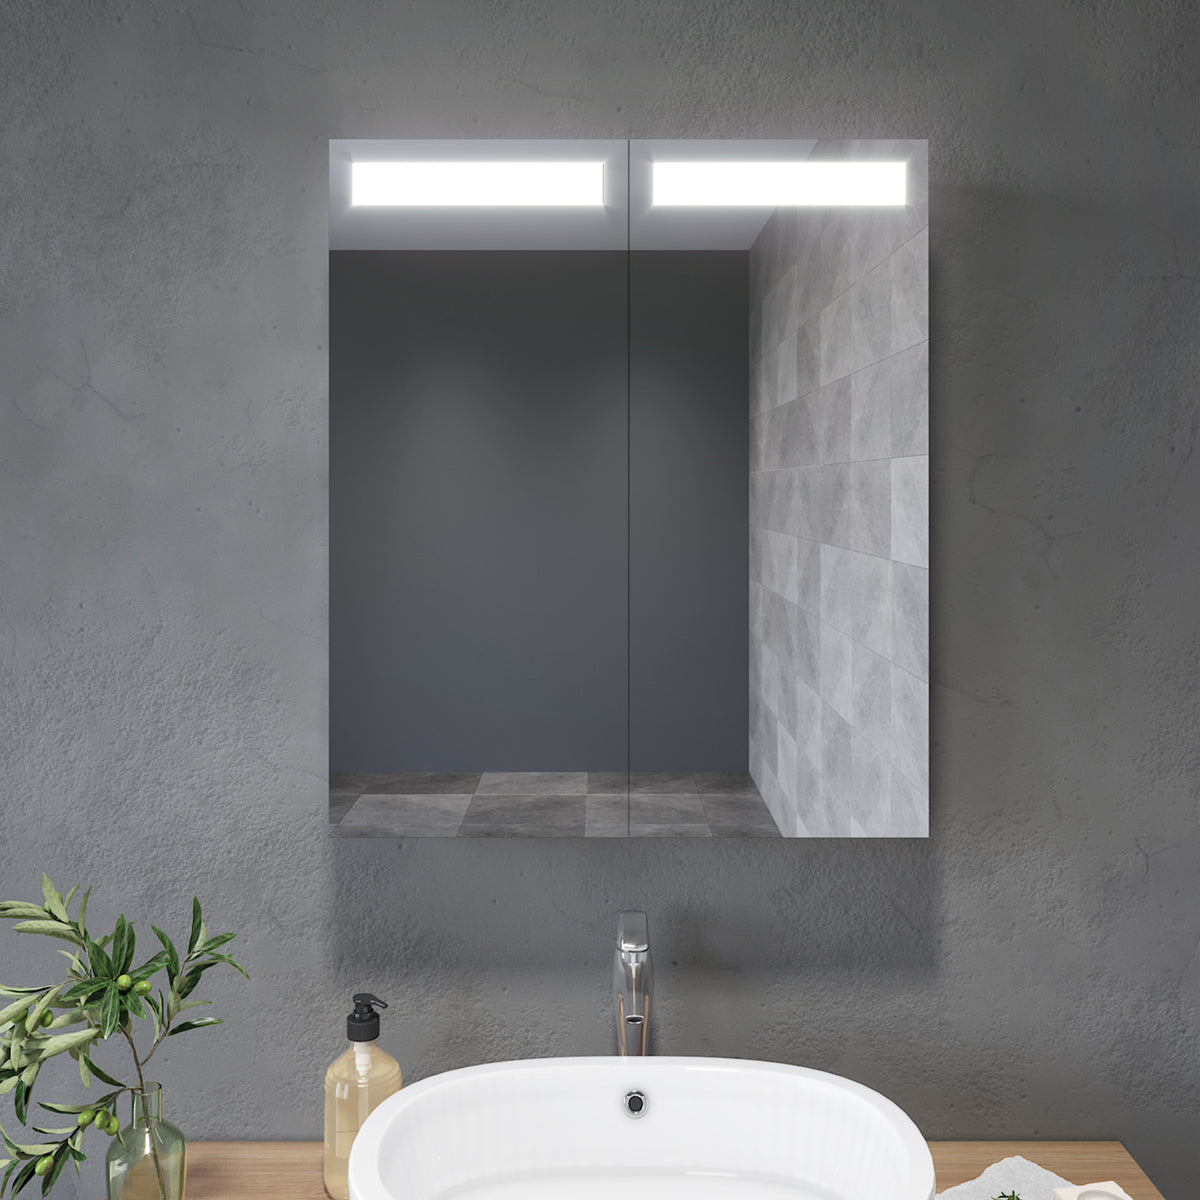 Badezimmer LED Spiegelschrank mit Beleuchtung 2-türig Infrarotschalter 60 x 70 x 13cm